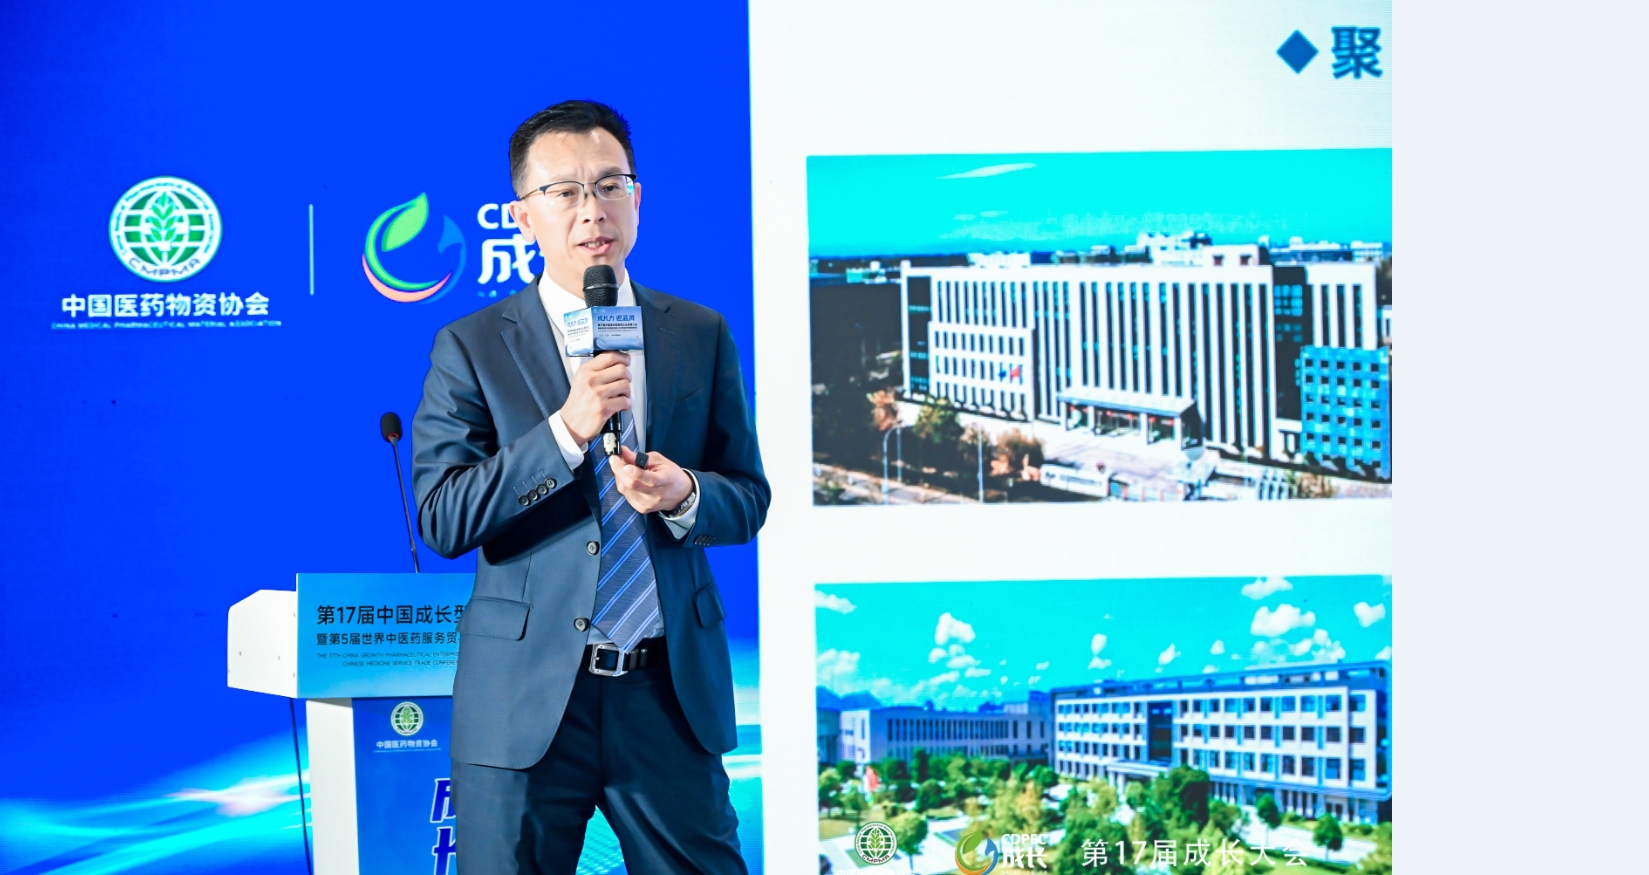 五和博澳亮相第17届中国成长型医药企业发展大会